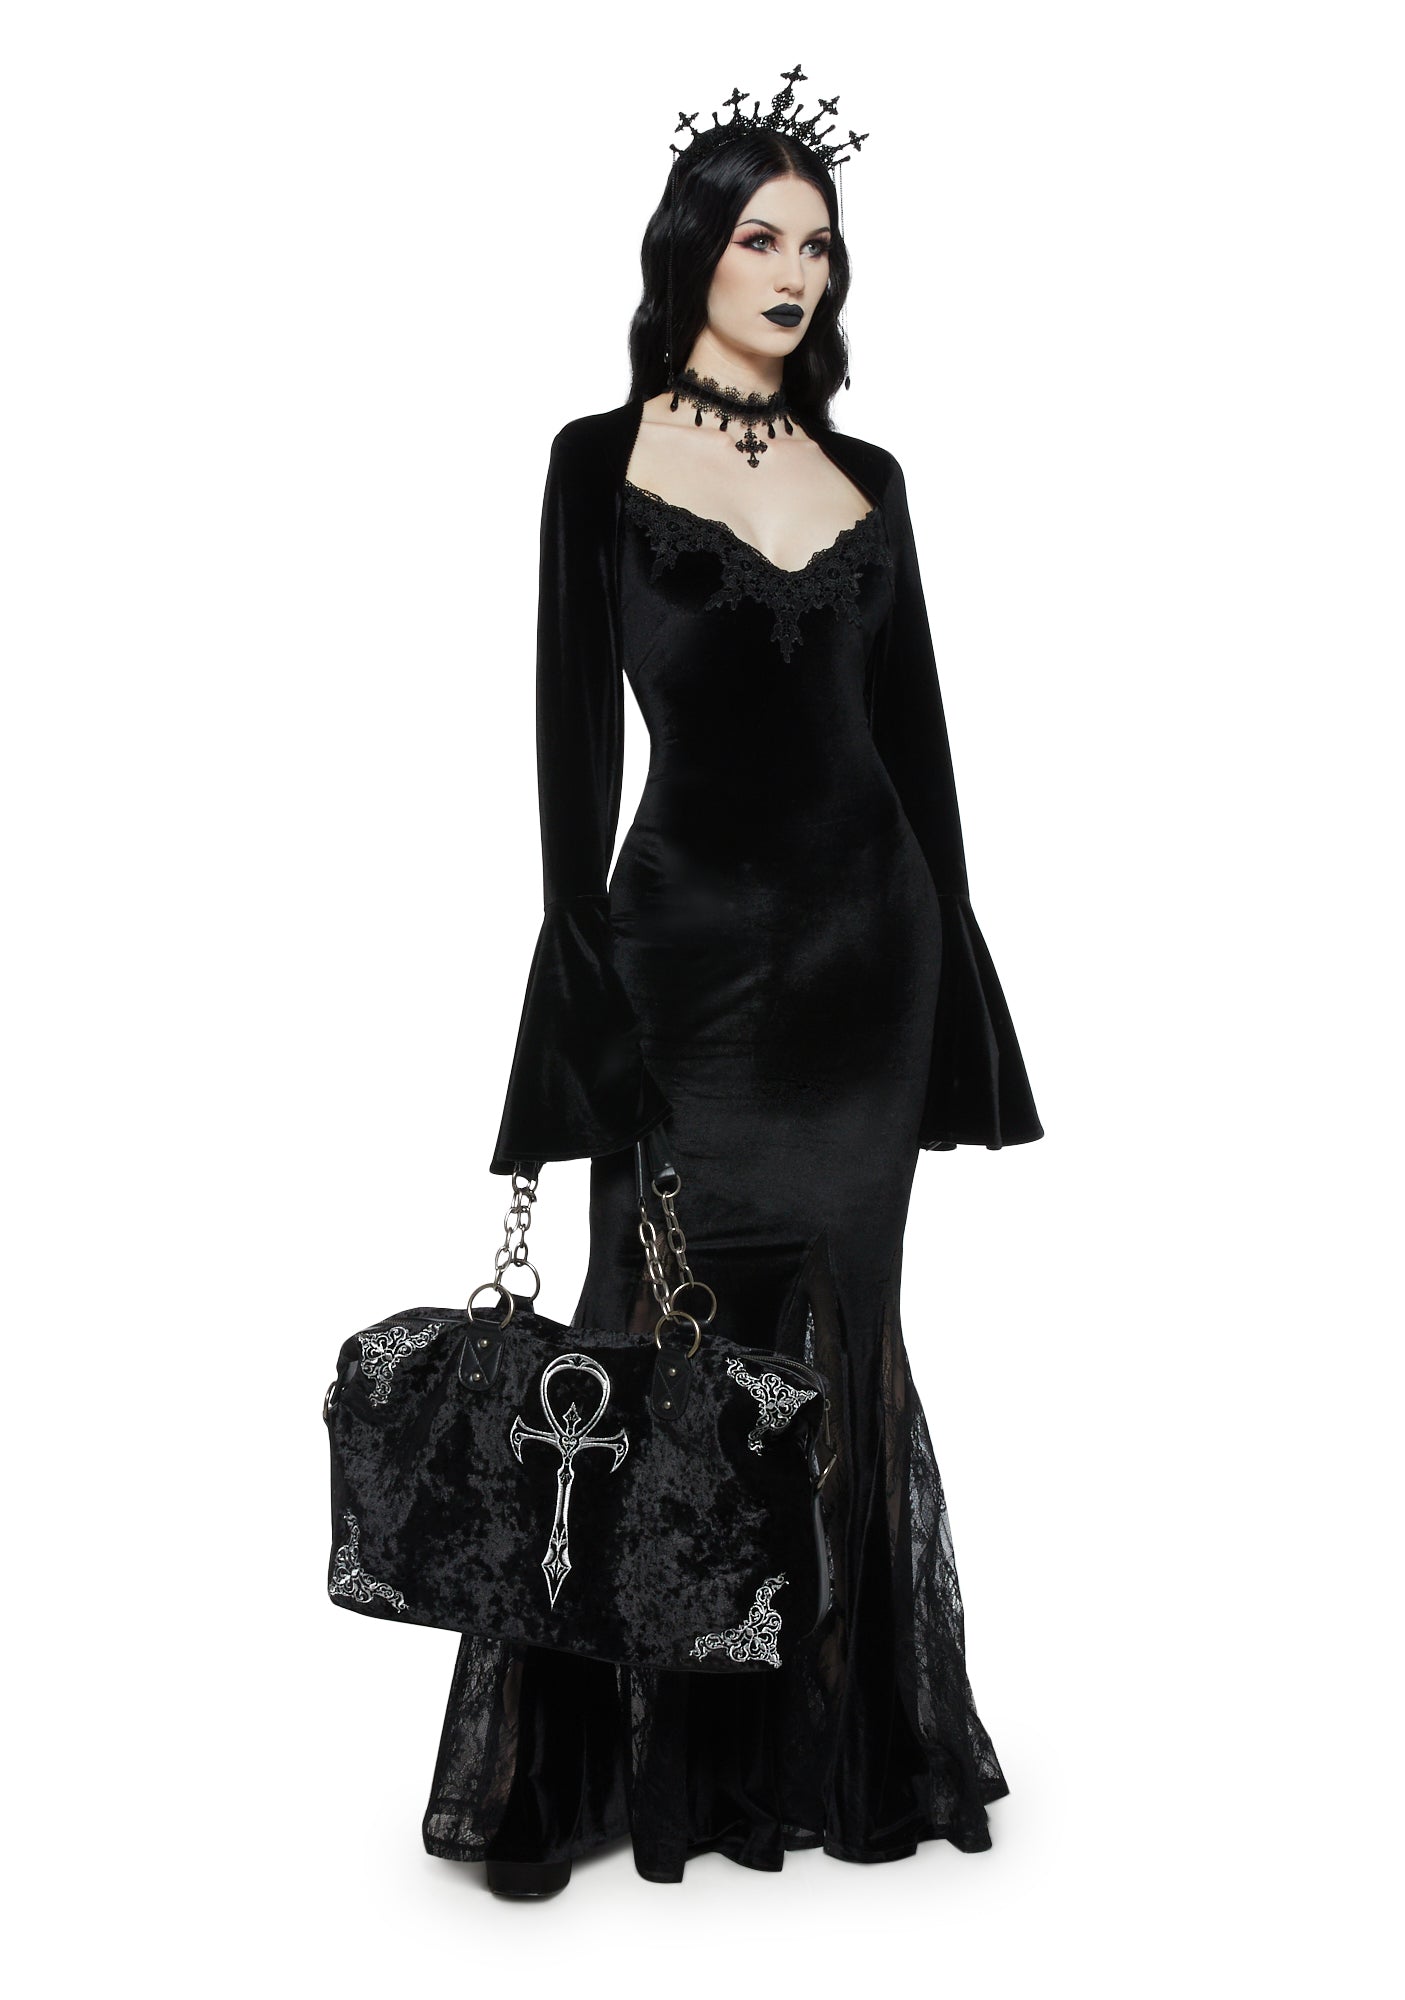 Louis Vuitton Men’s Black Formal Dress Shoes , US Size 8.5/ EU 41-42 :) 